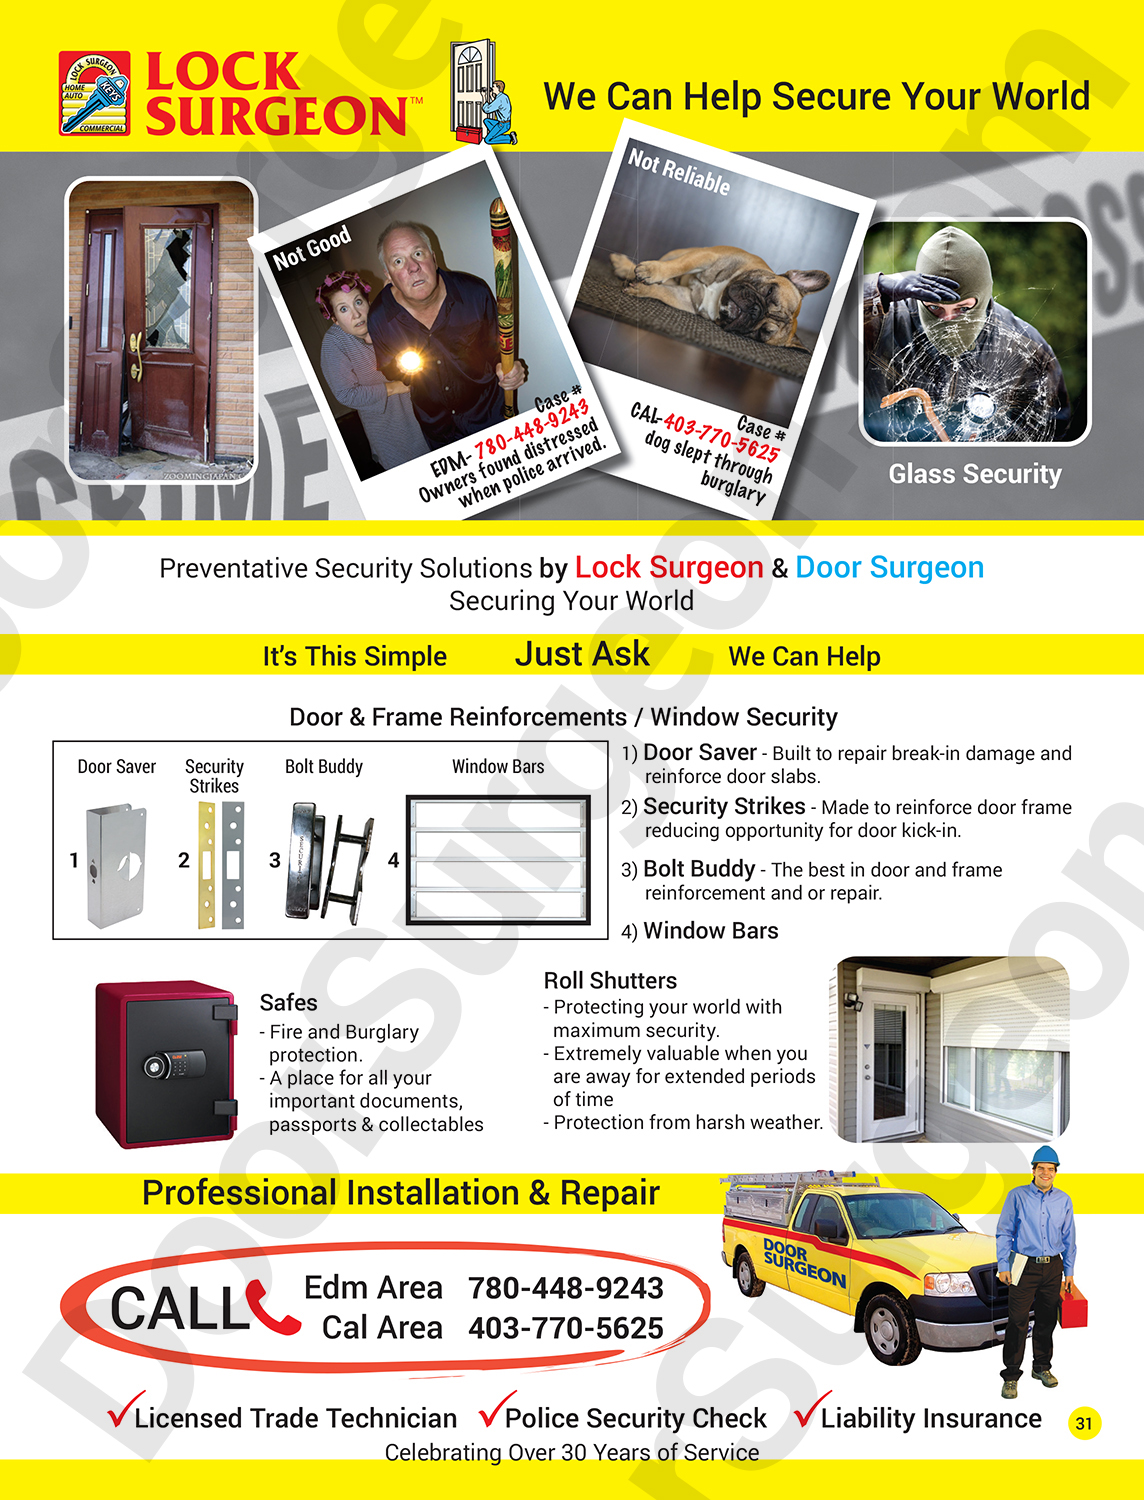 Door Surgeon preventative security solutions door savers security strikes bolt buddies window bars.